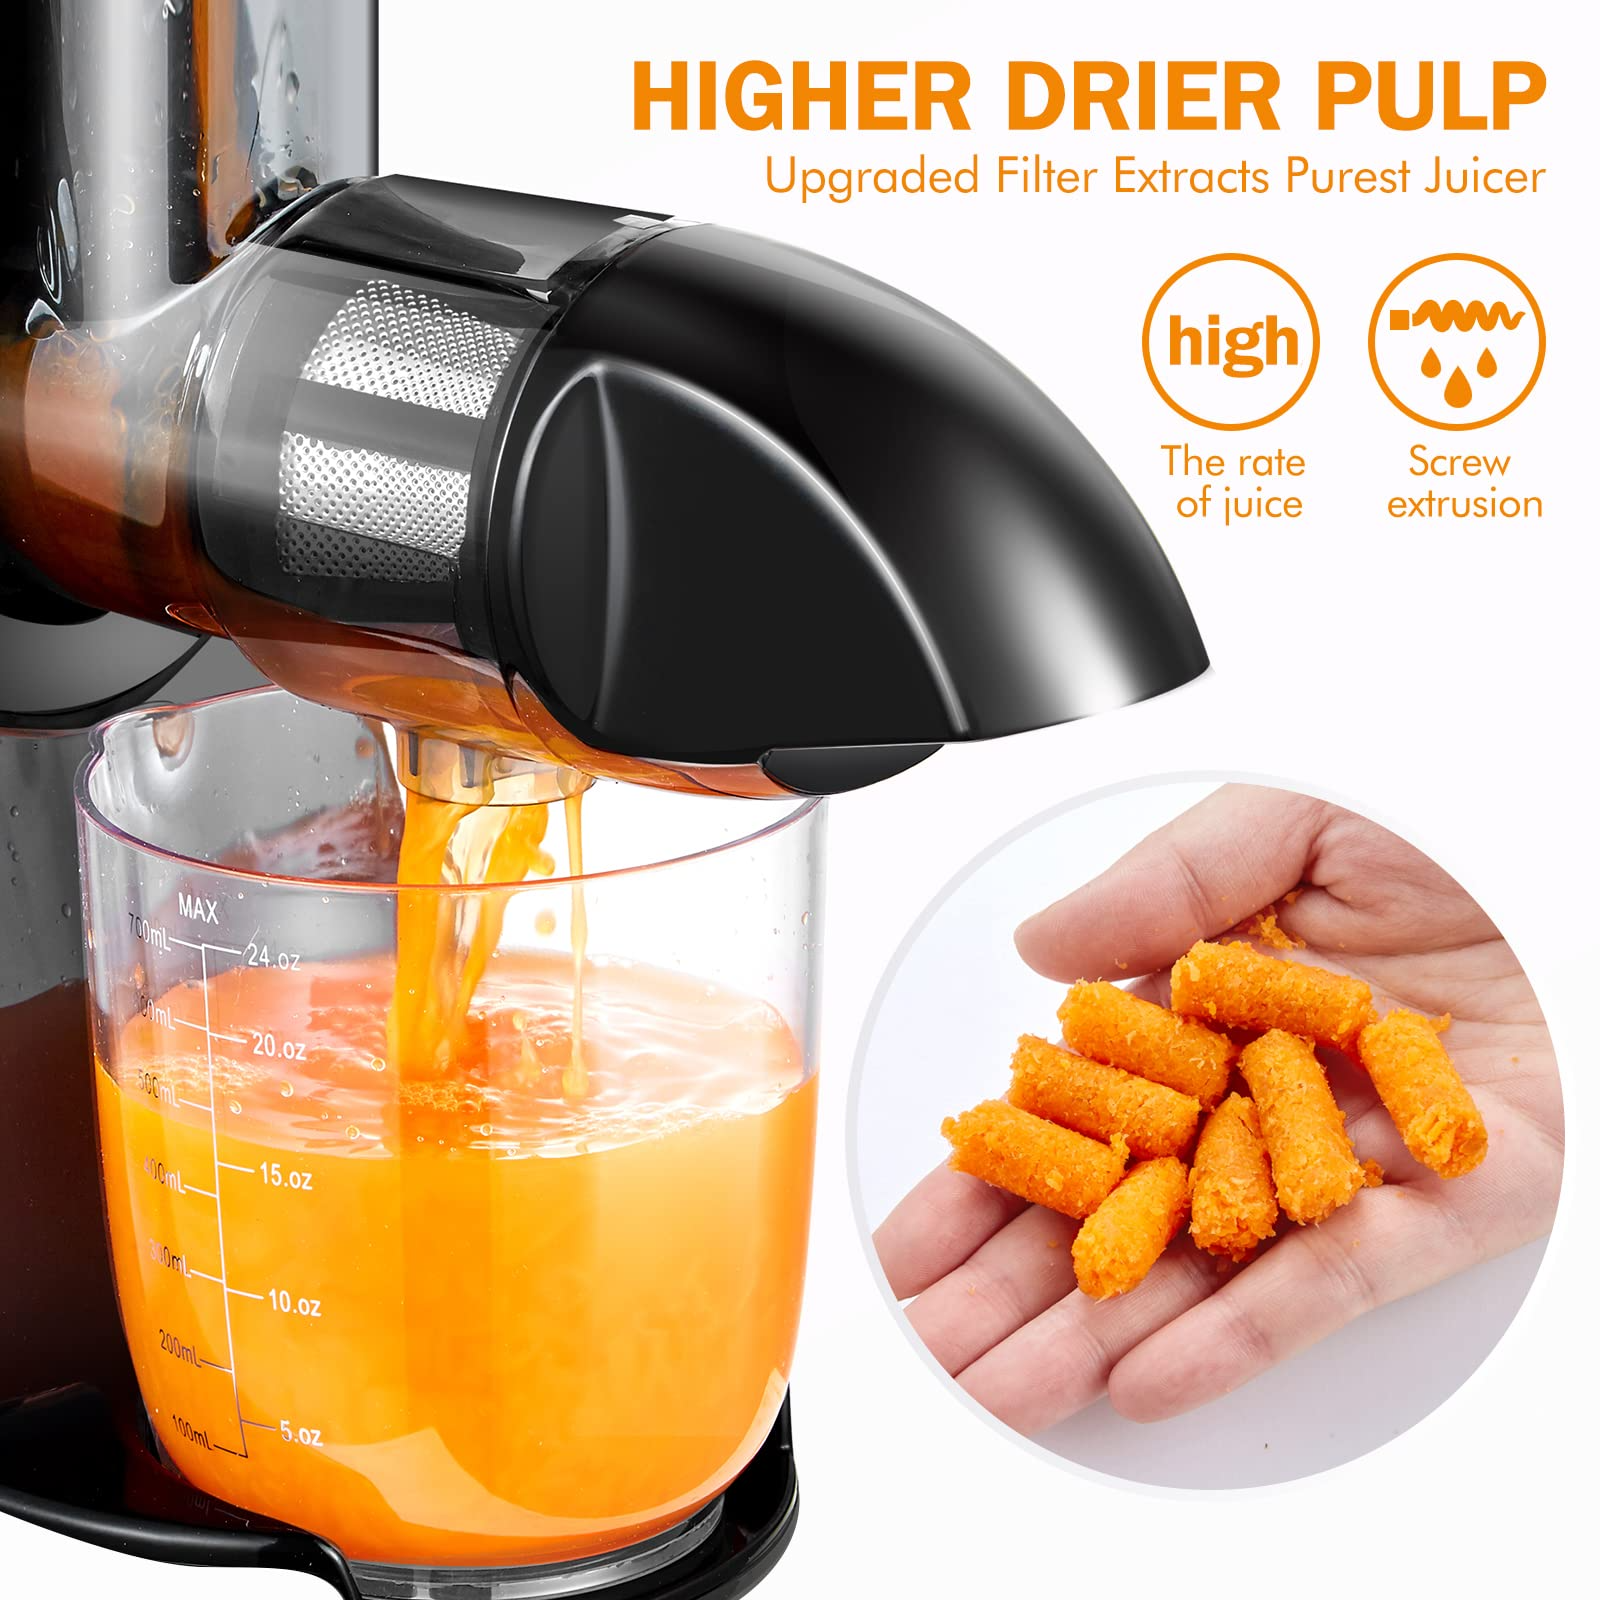 AMZCHEF Slow Juicer Masticating Juicer Machine ZM1501 Orange